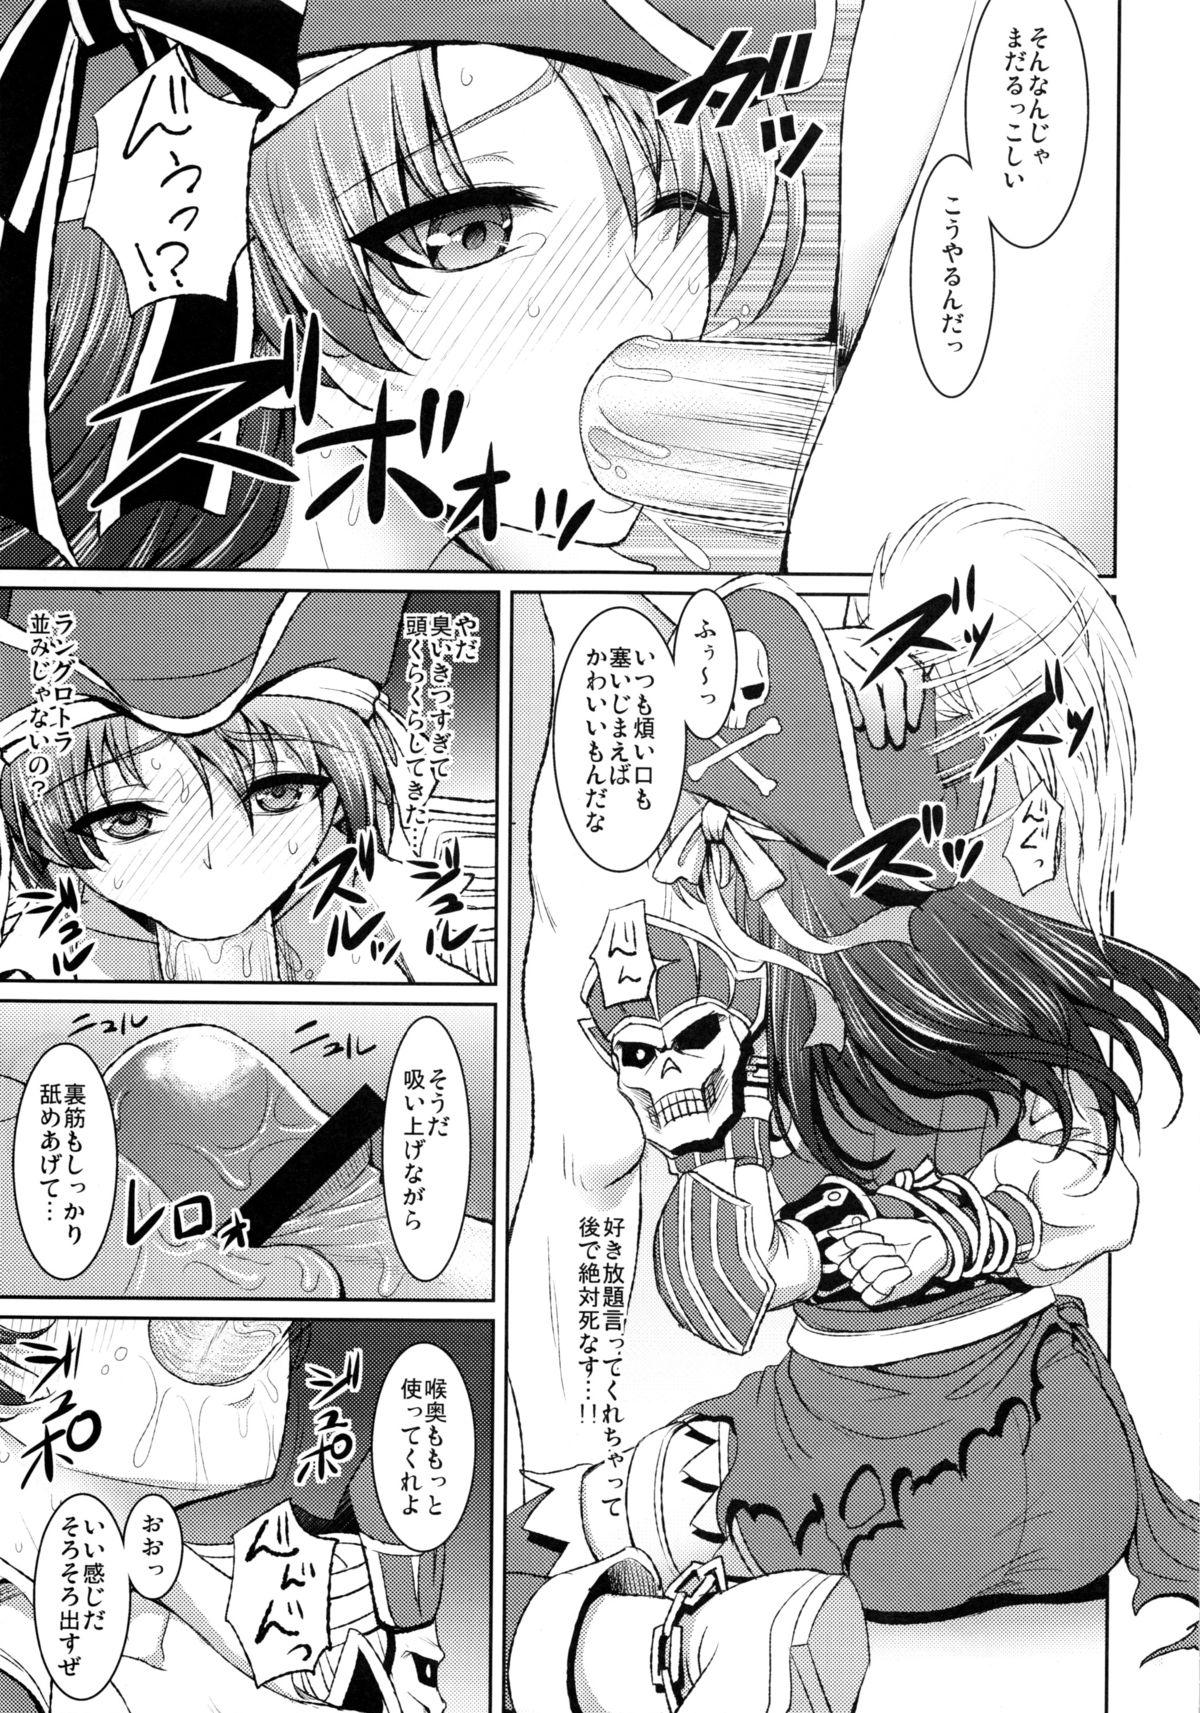 Glasses Kaizoku Musume no Gosan - Monster hunter Body - Page 8